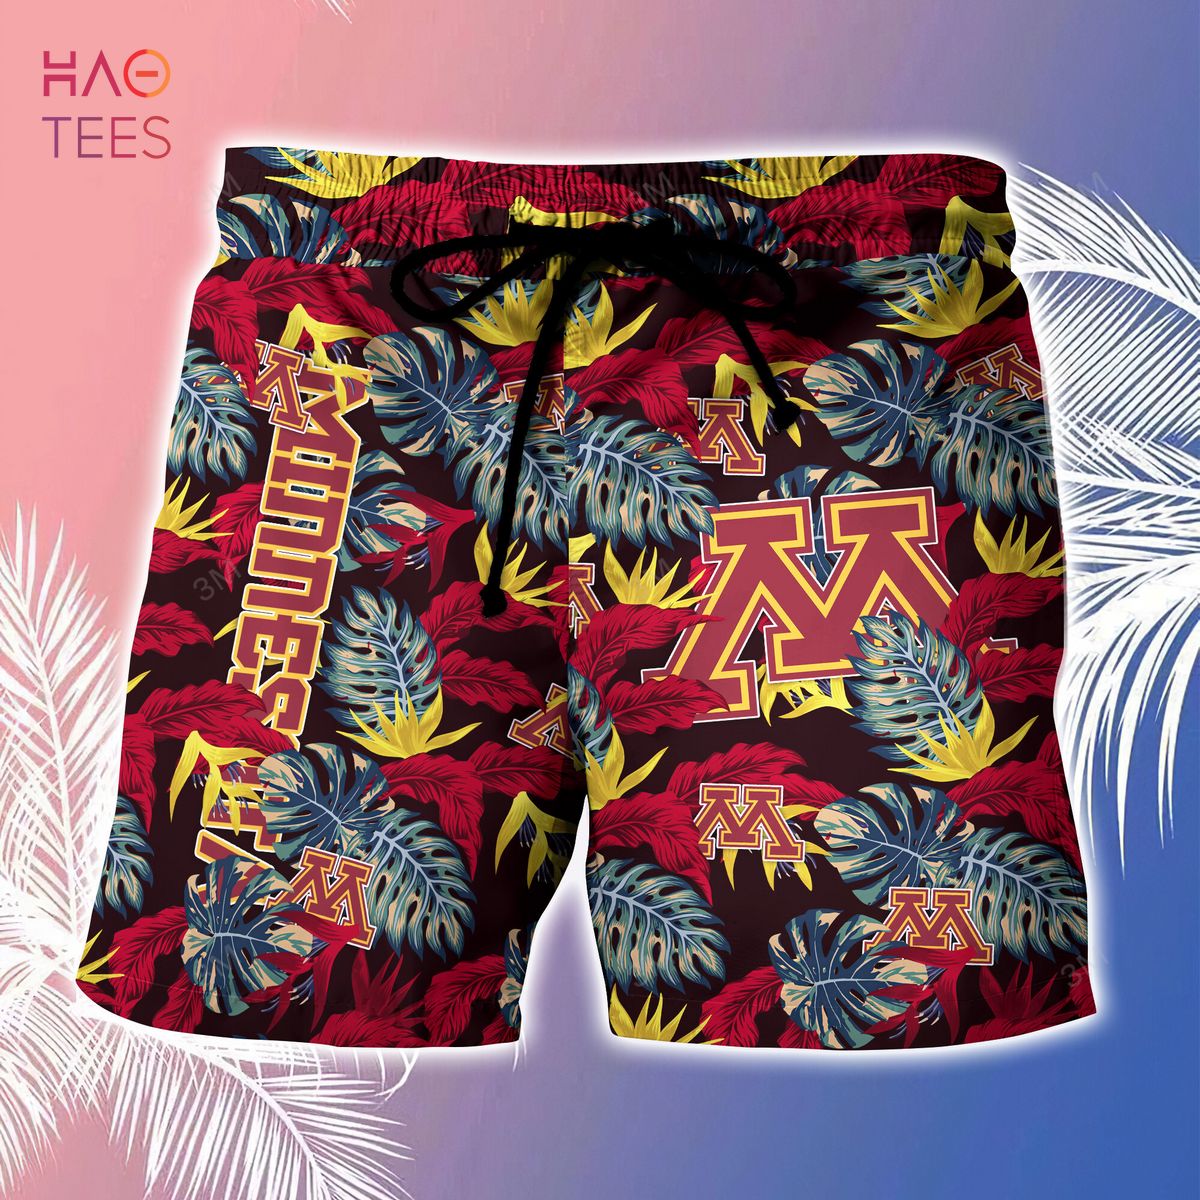 Nhl California Golden Seals Hawaiian Shirt And Shorts Summer Gift For Fans  - Banantees